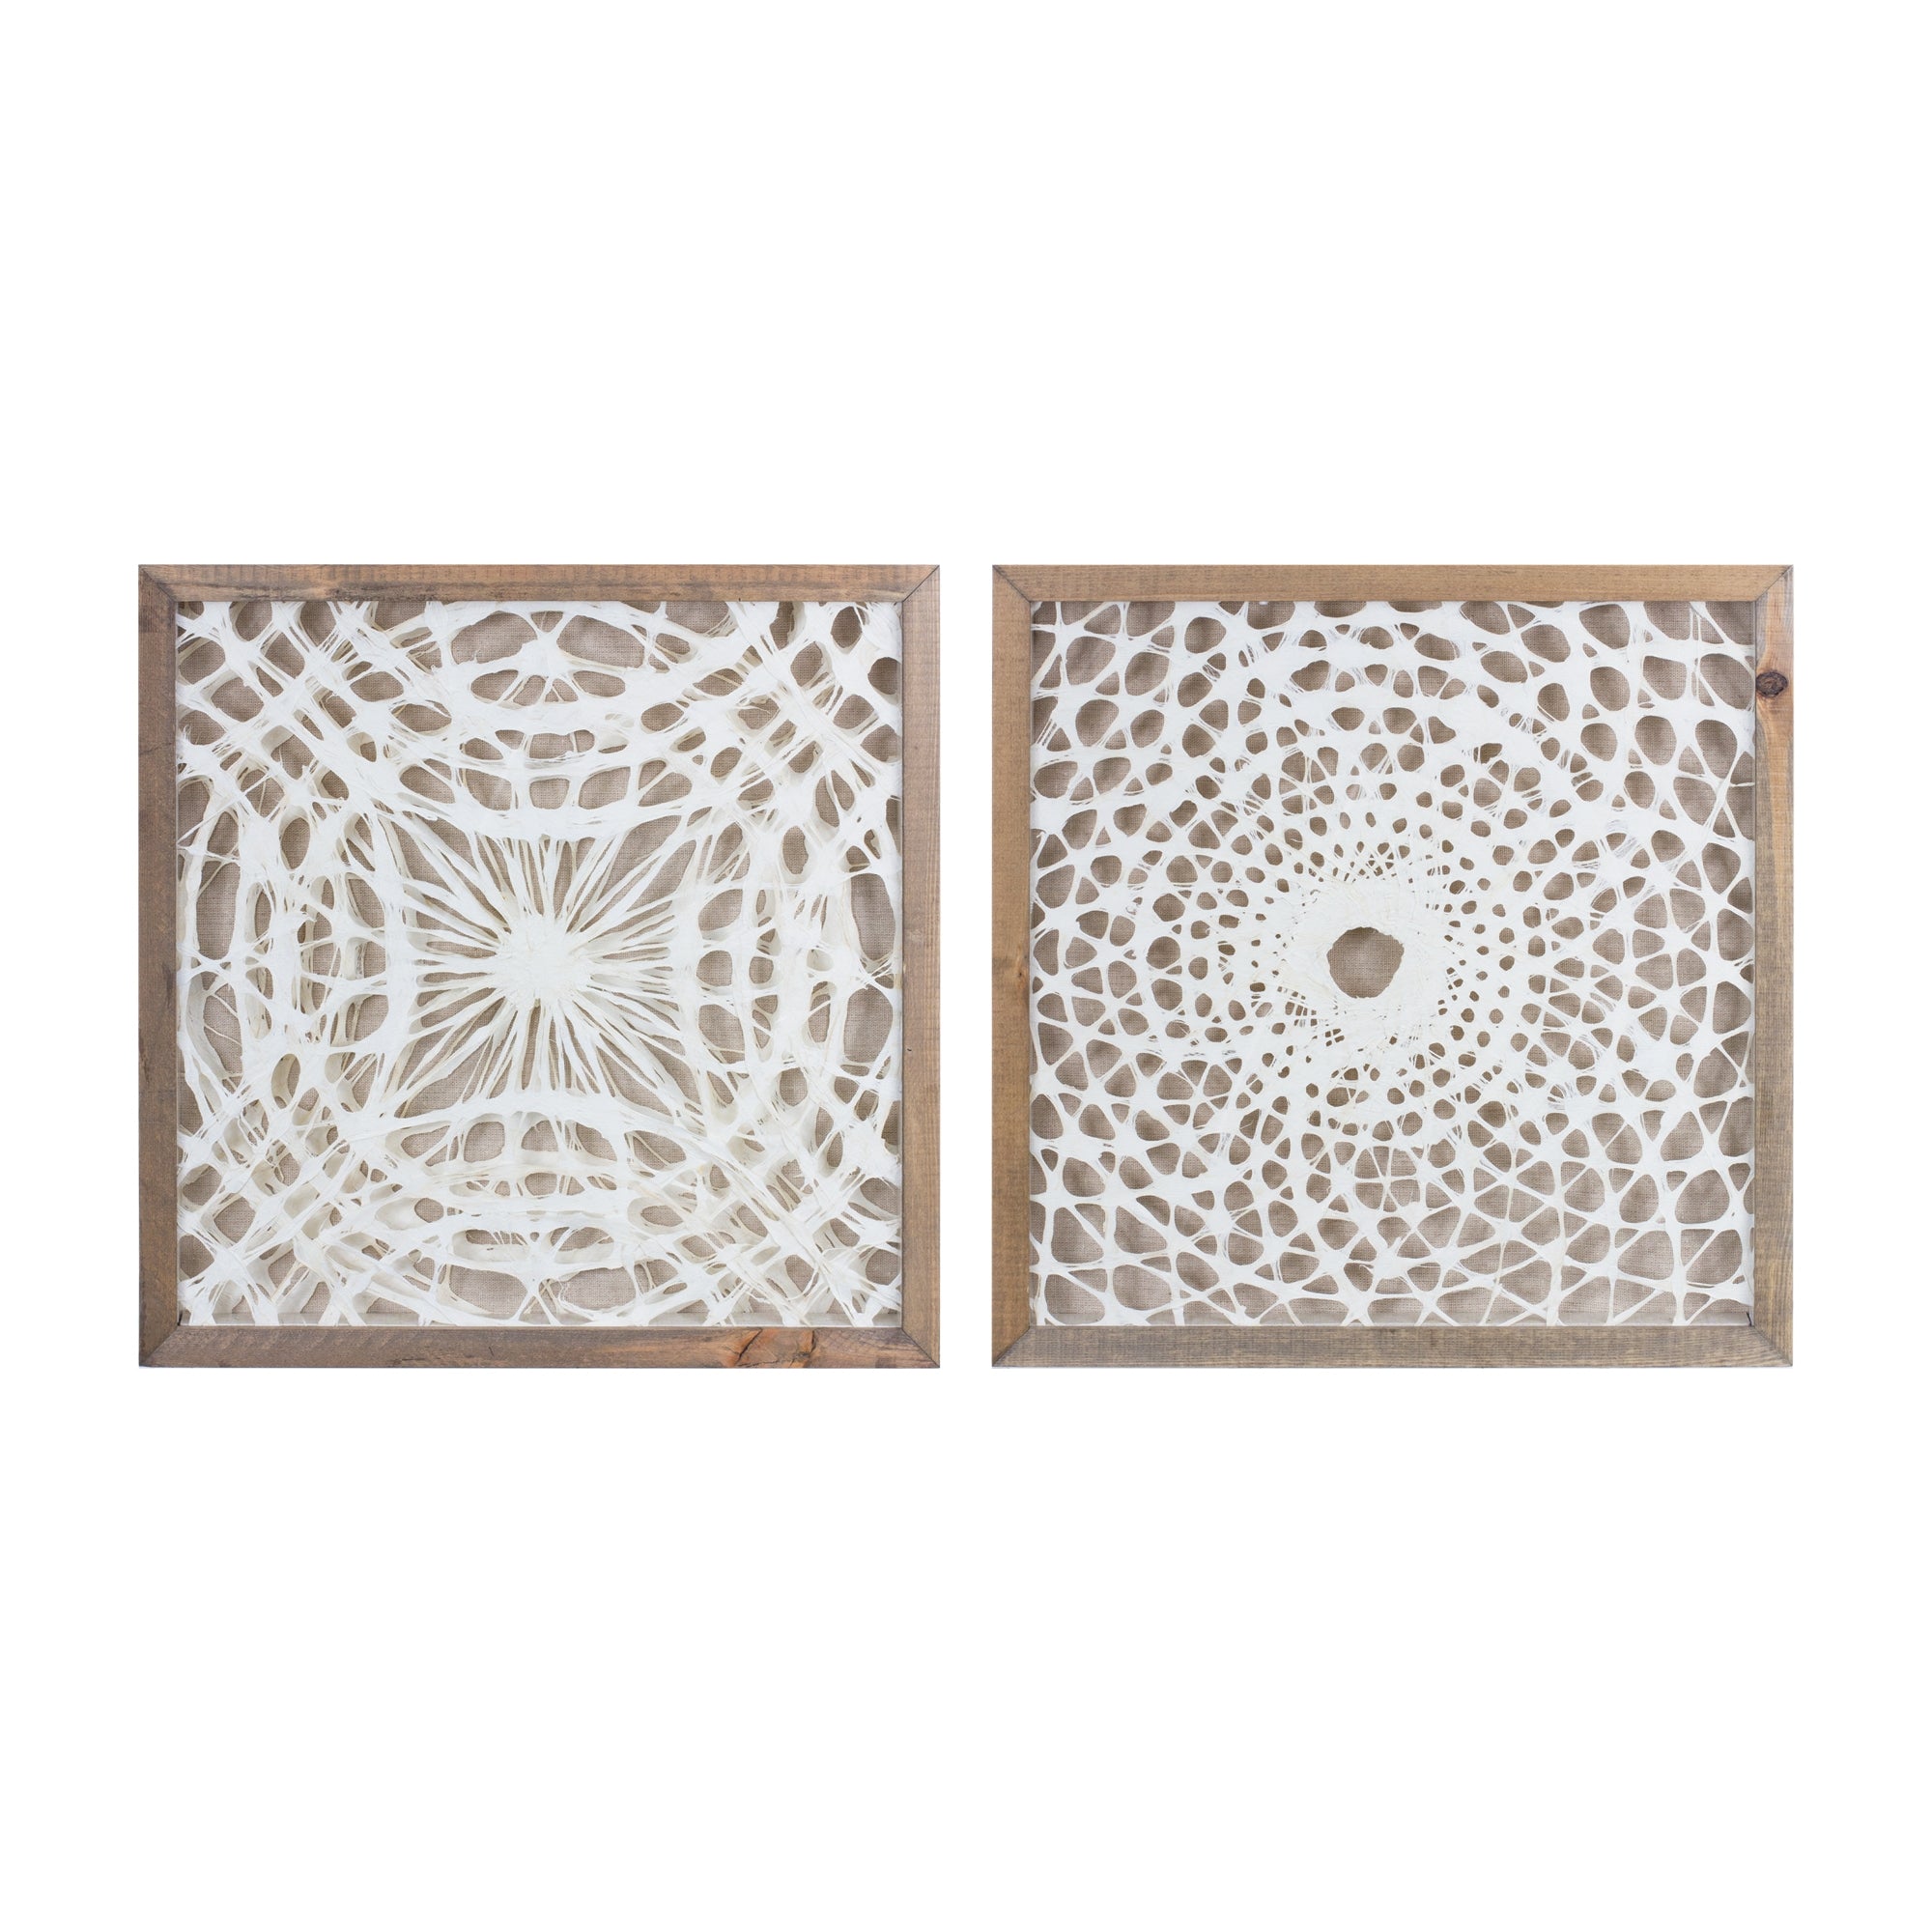 Framed Paper Mache Wall Art (Set of 2)